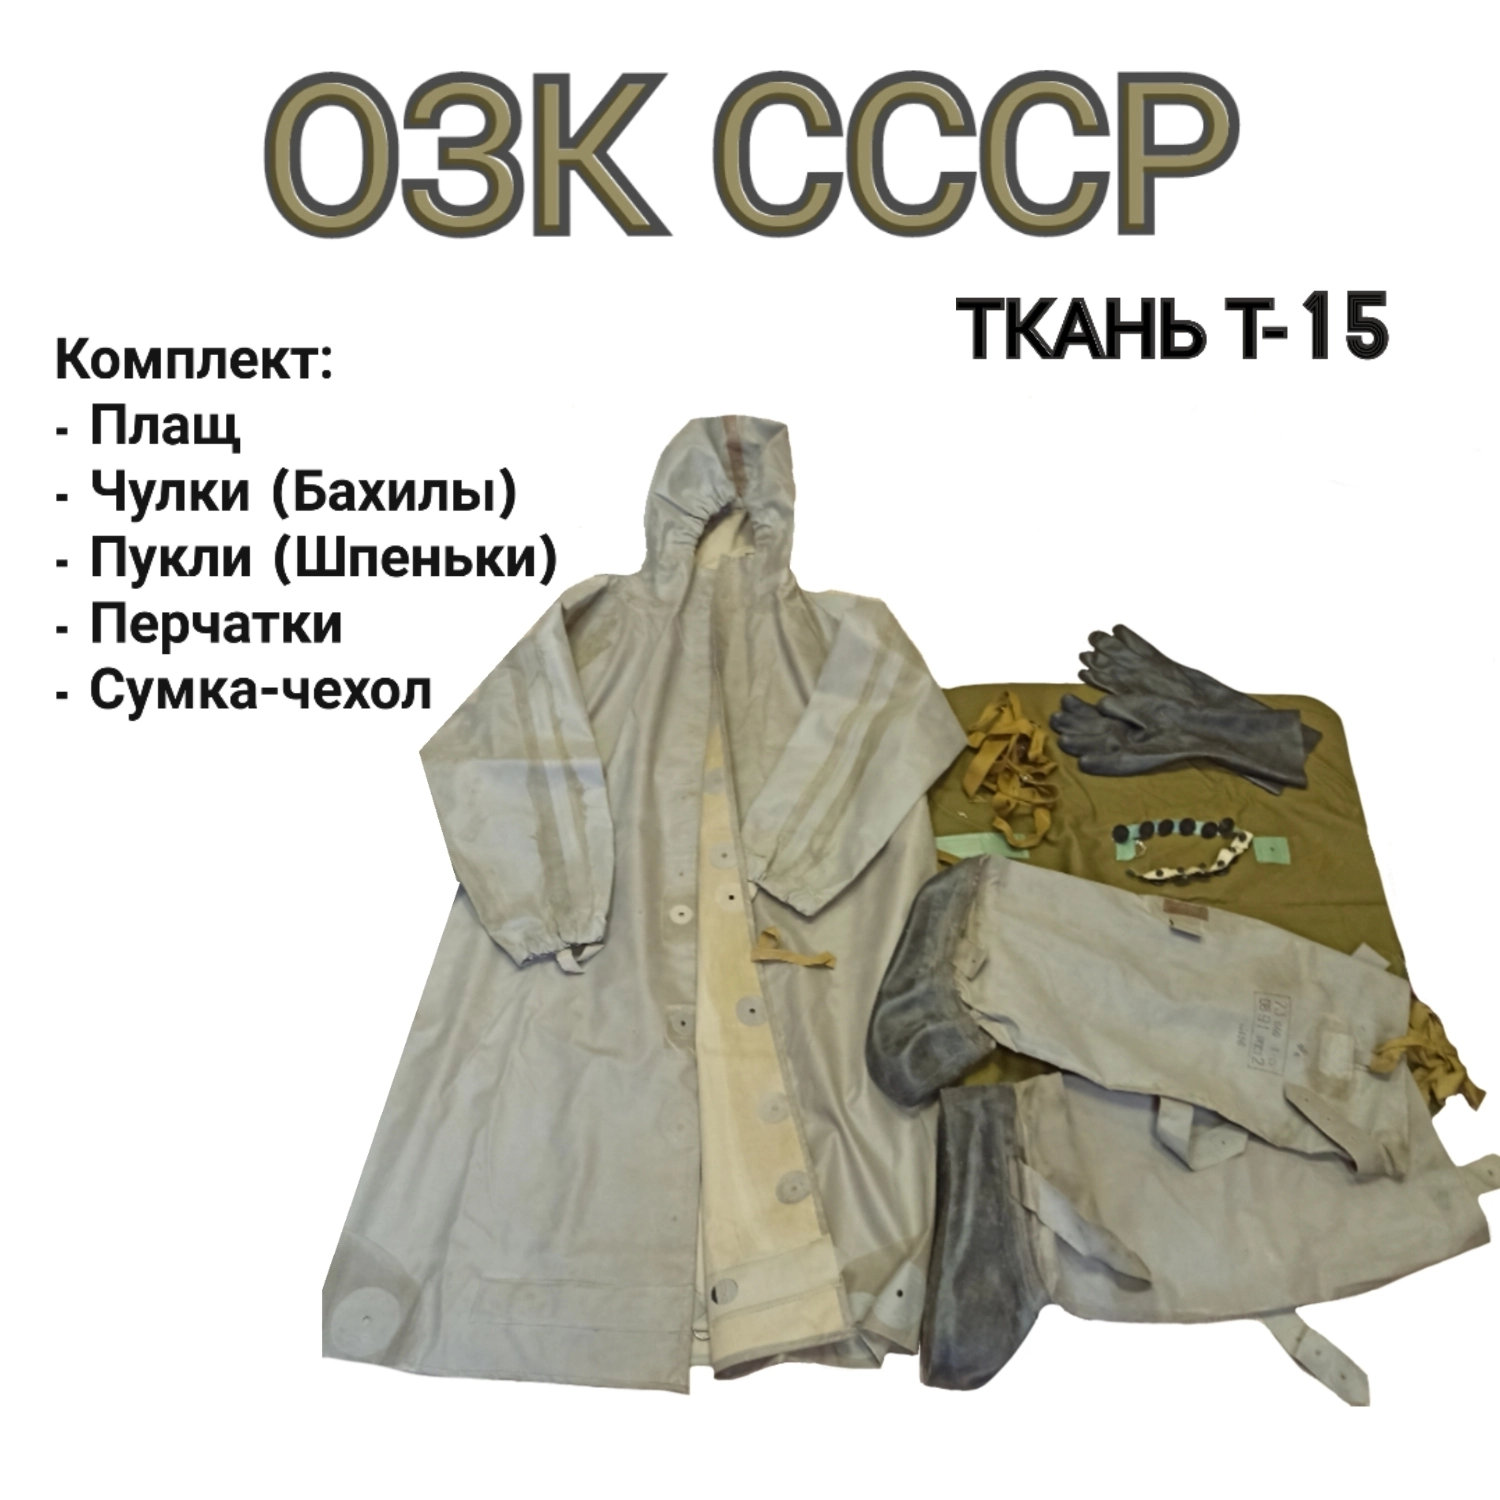 Общевойсковой защитный комплект с хранения ОЗК СССР ткань Т-15 цвет серый